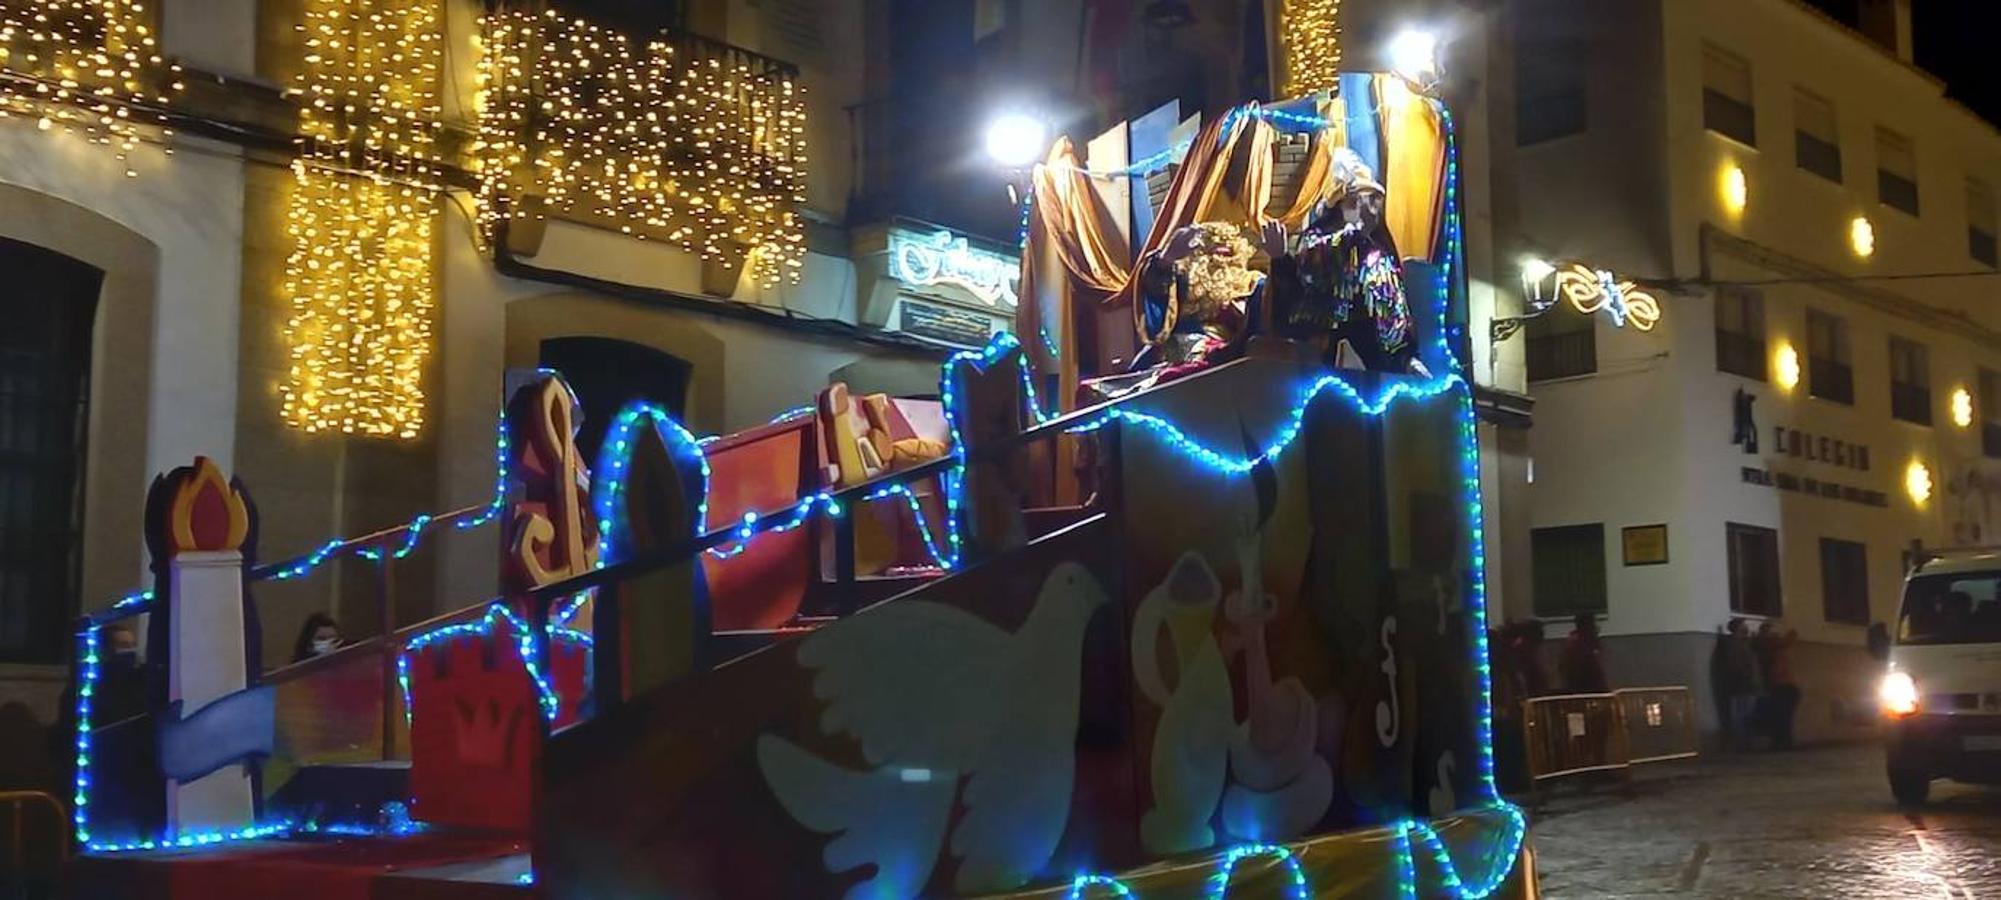 La Cabalgata de Reyes volvió a recorrer las calles arroyanas.